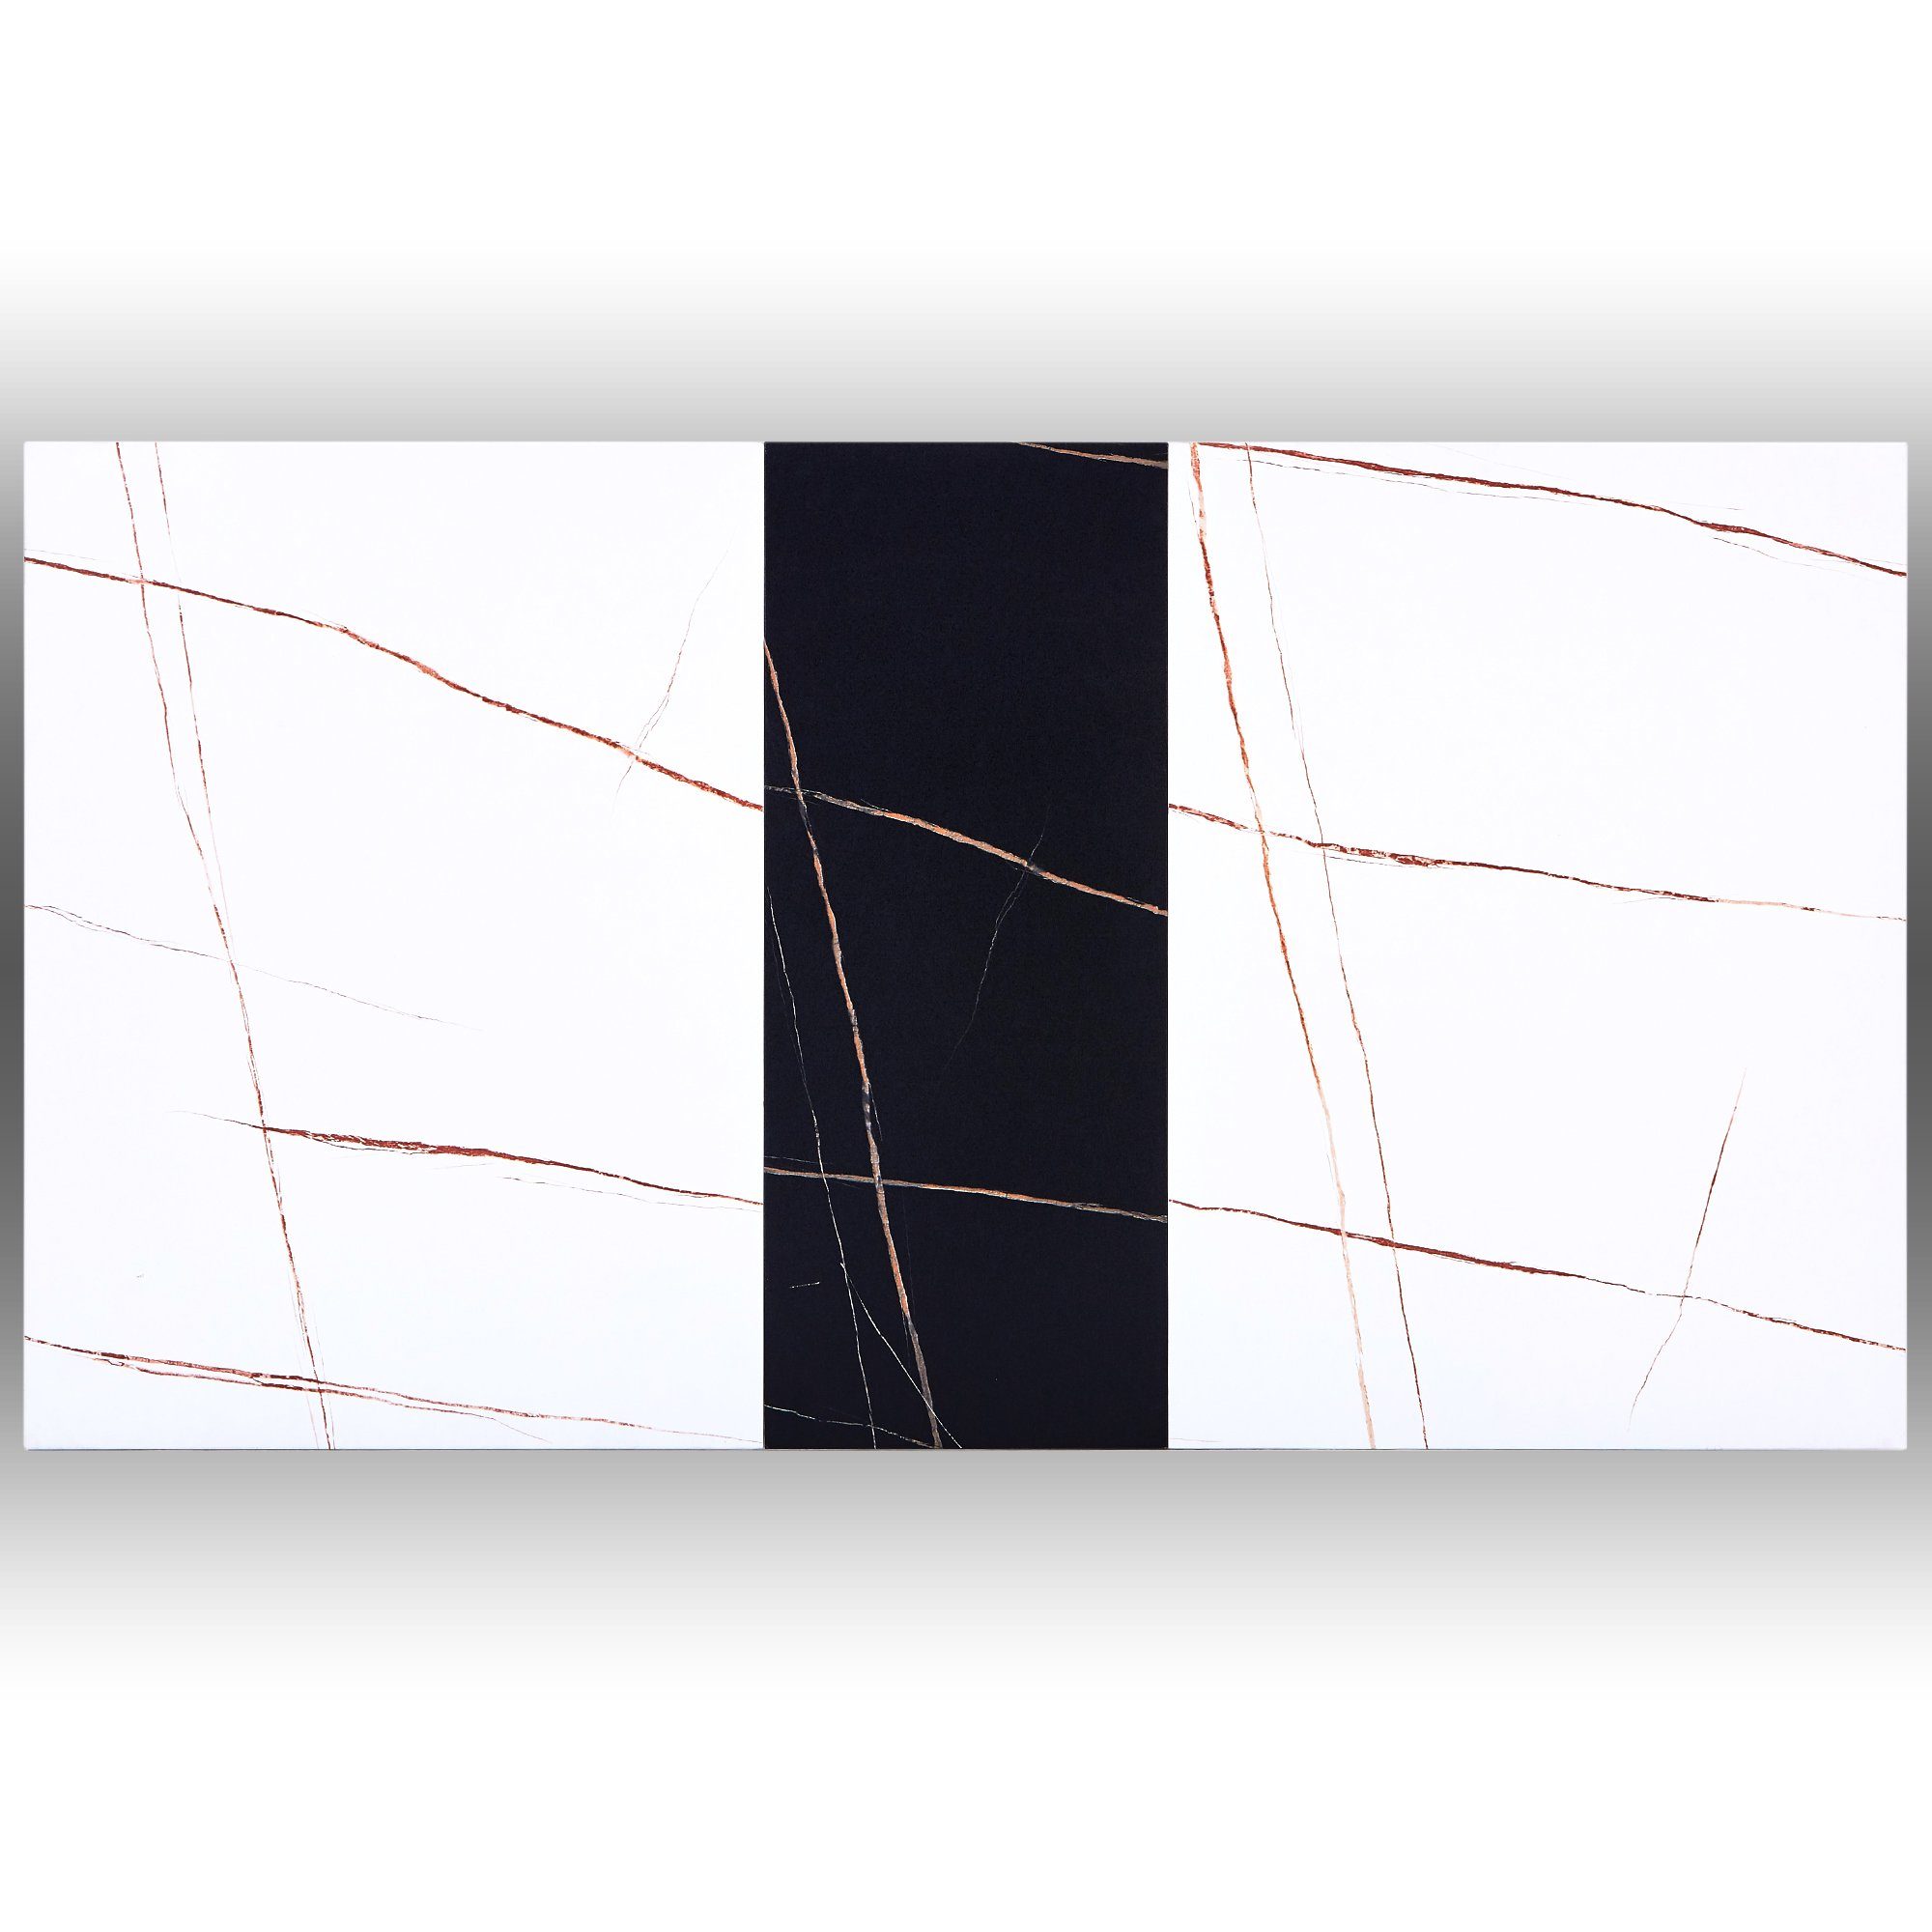 Fangqi Esstisch Marmor mit 110/140x75x77cm, Teleskoptisch, Stahlrahmen Weiß&Schwarz Farbverlauf, Geschwärzter